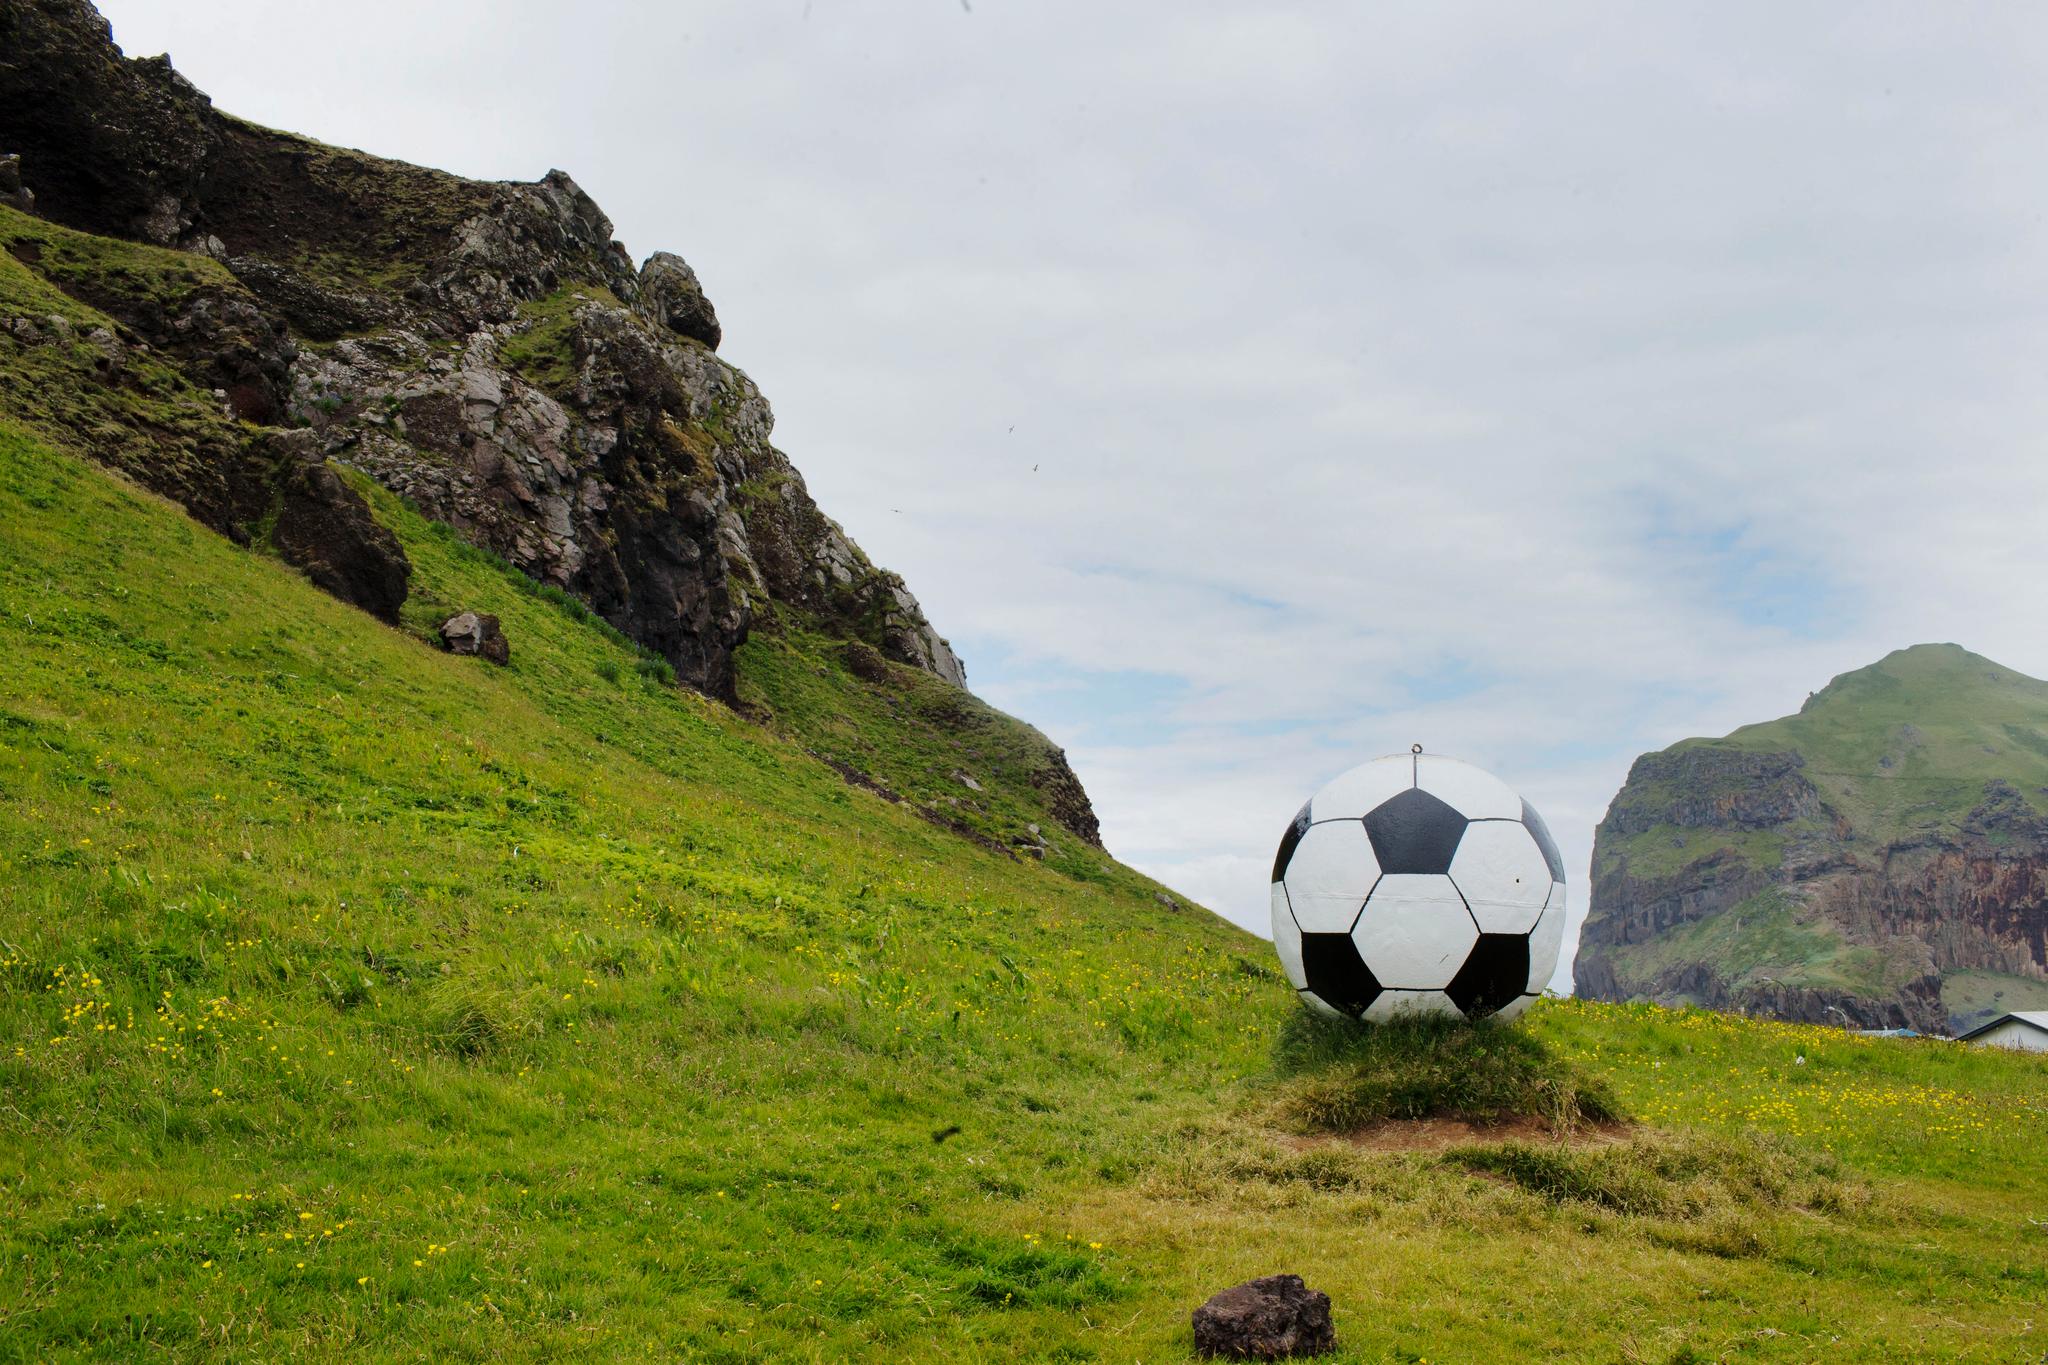 En liten gåtur fra sentrum over åskammen ligger inngangsporten til idrettsanlegget Hásteinsvöllur på den lille øygruppen Vestmannaeyjar utenfor sørkysten av Island. En stor fotball ved inngangen markerer hva som er i sentrum nå. 